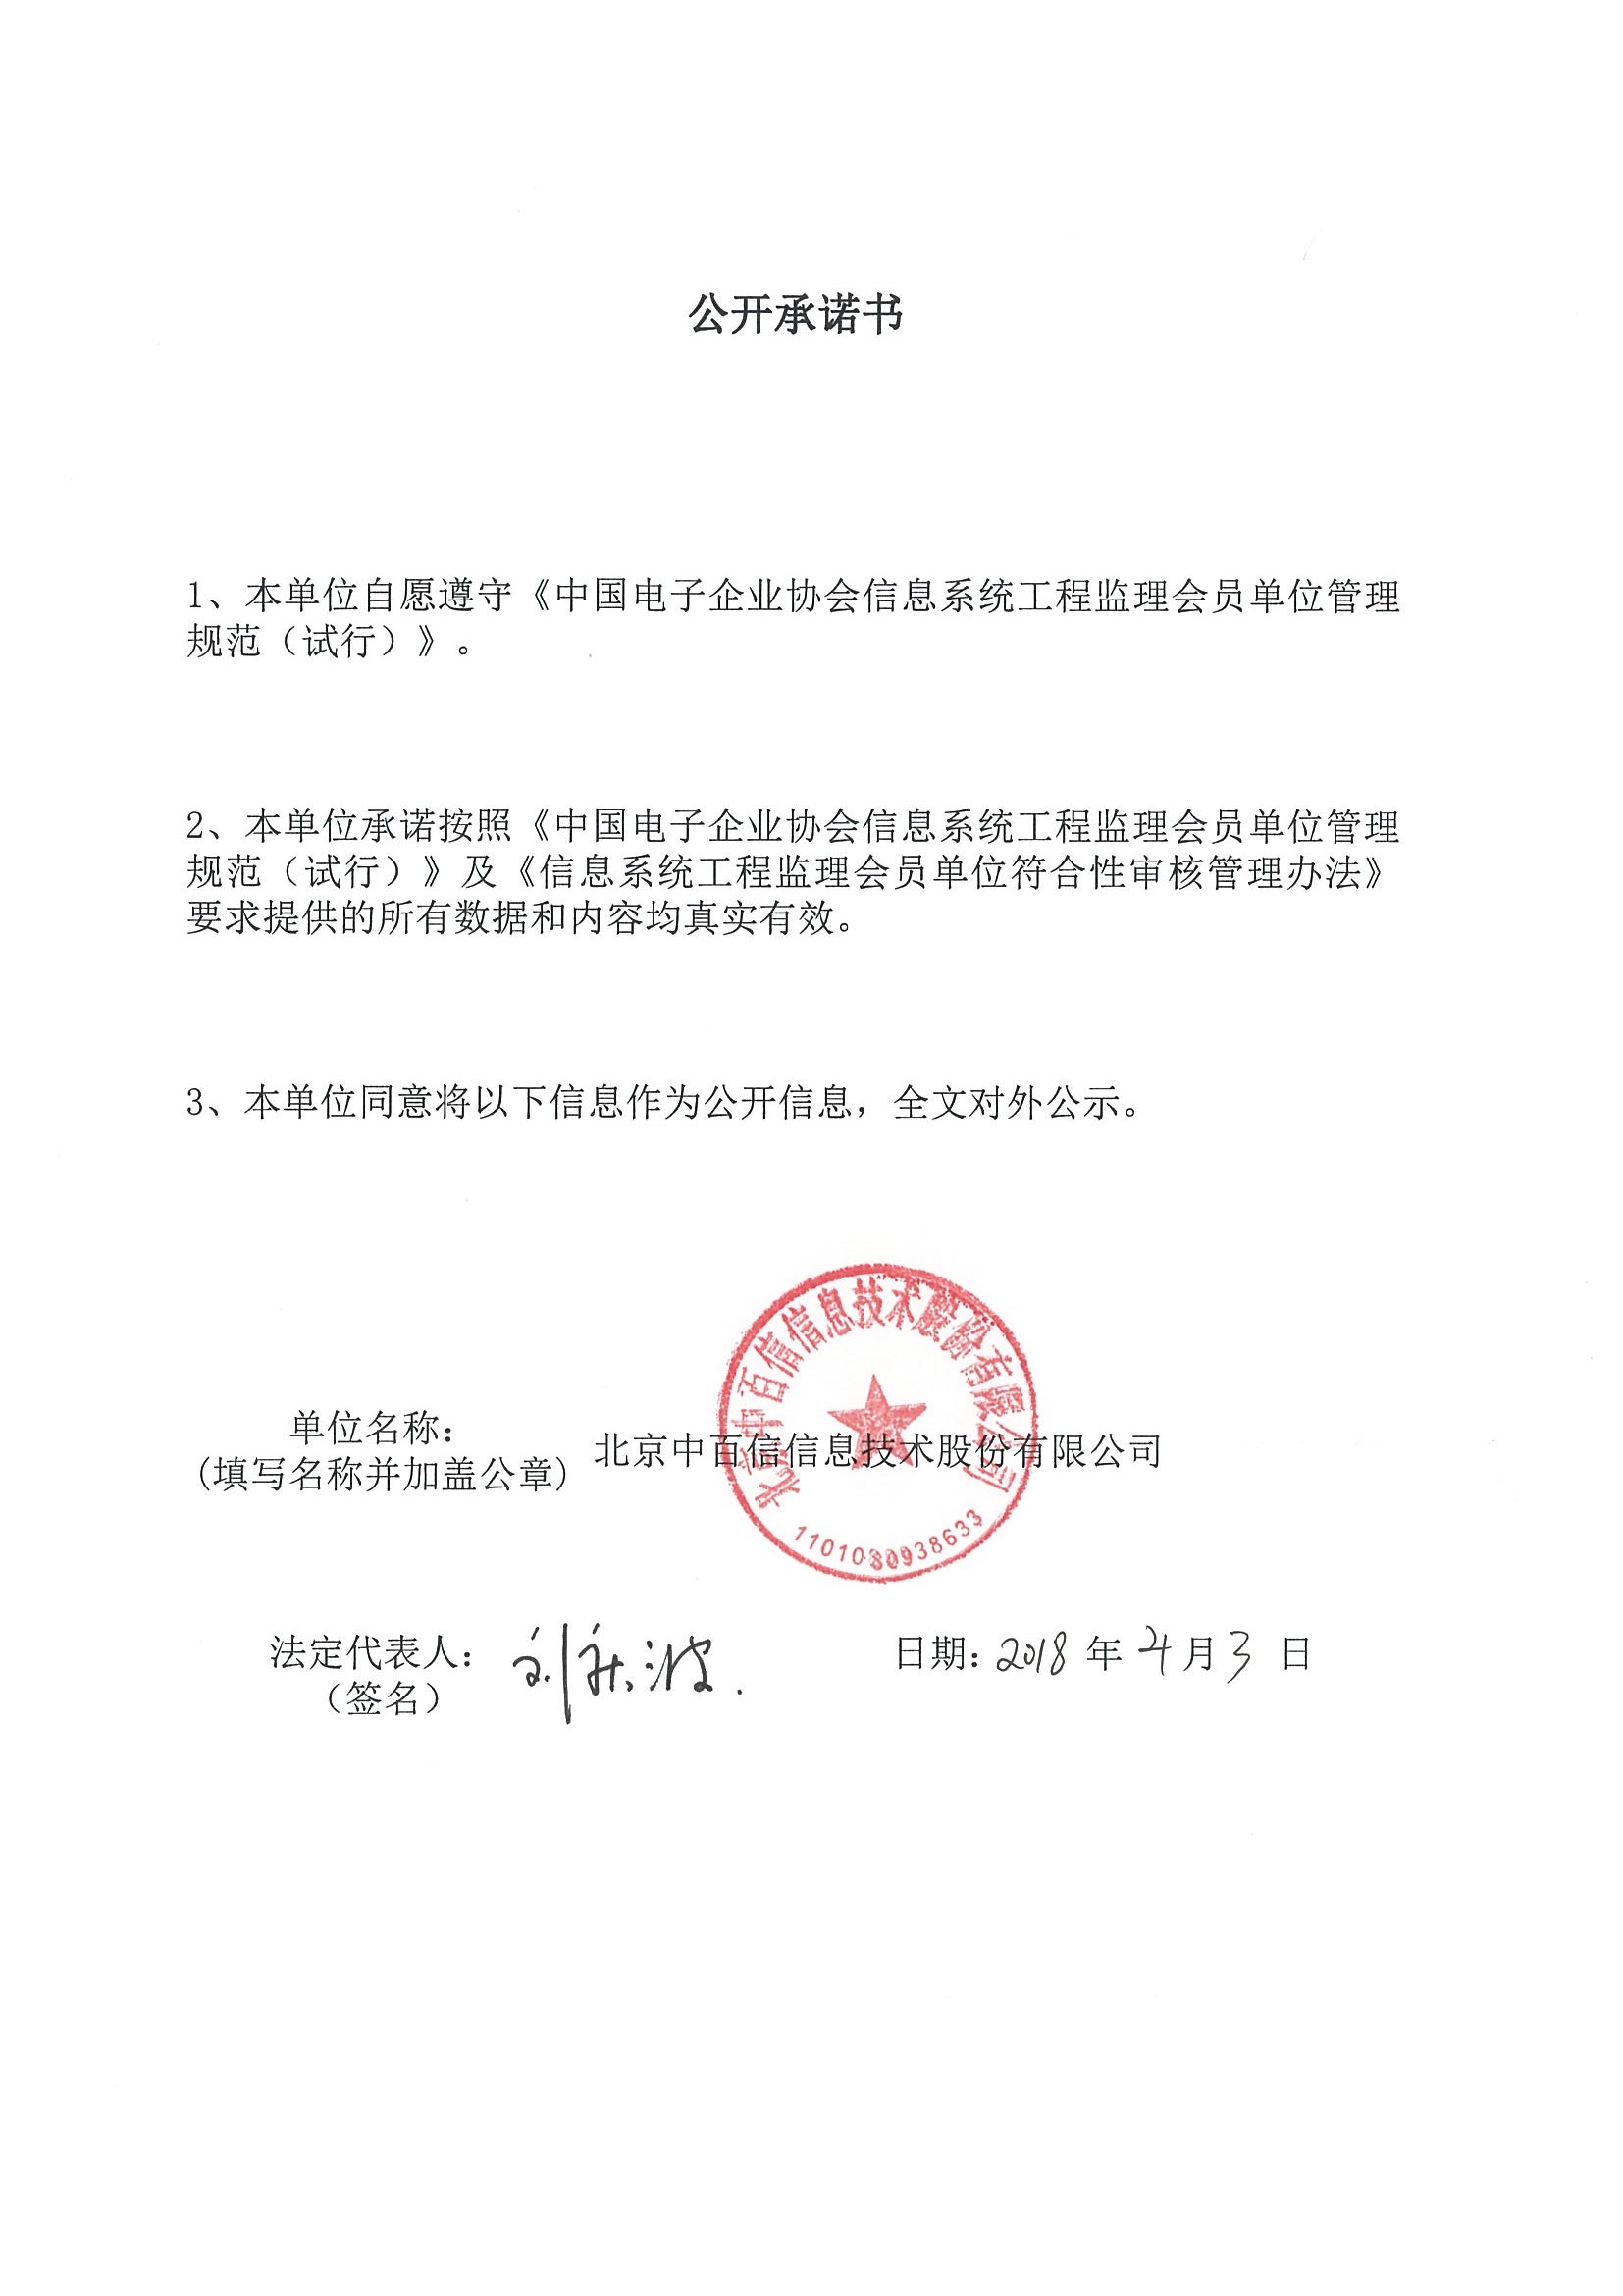 北京中百信信息技术股份有限公司信息系统工程监理资质证书